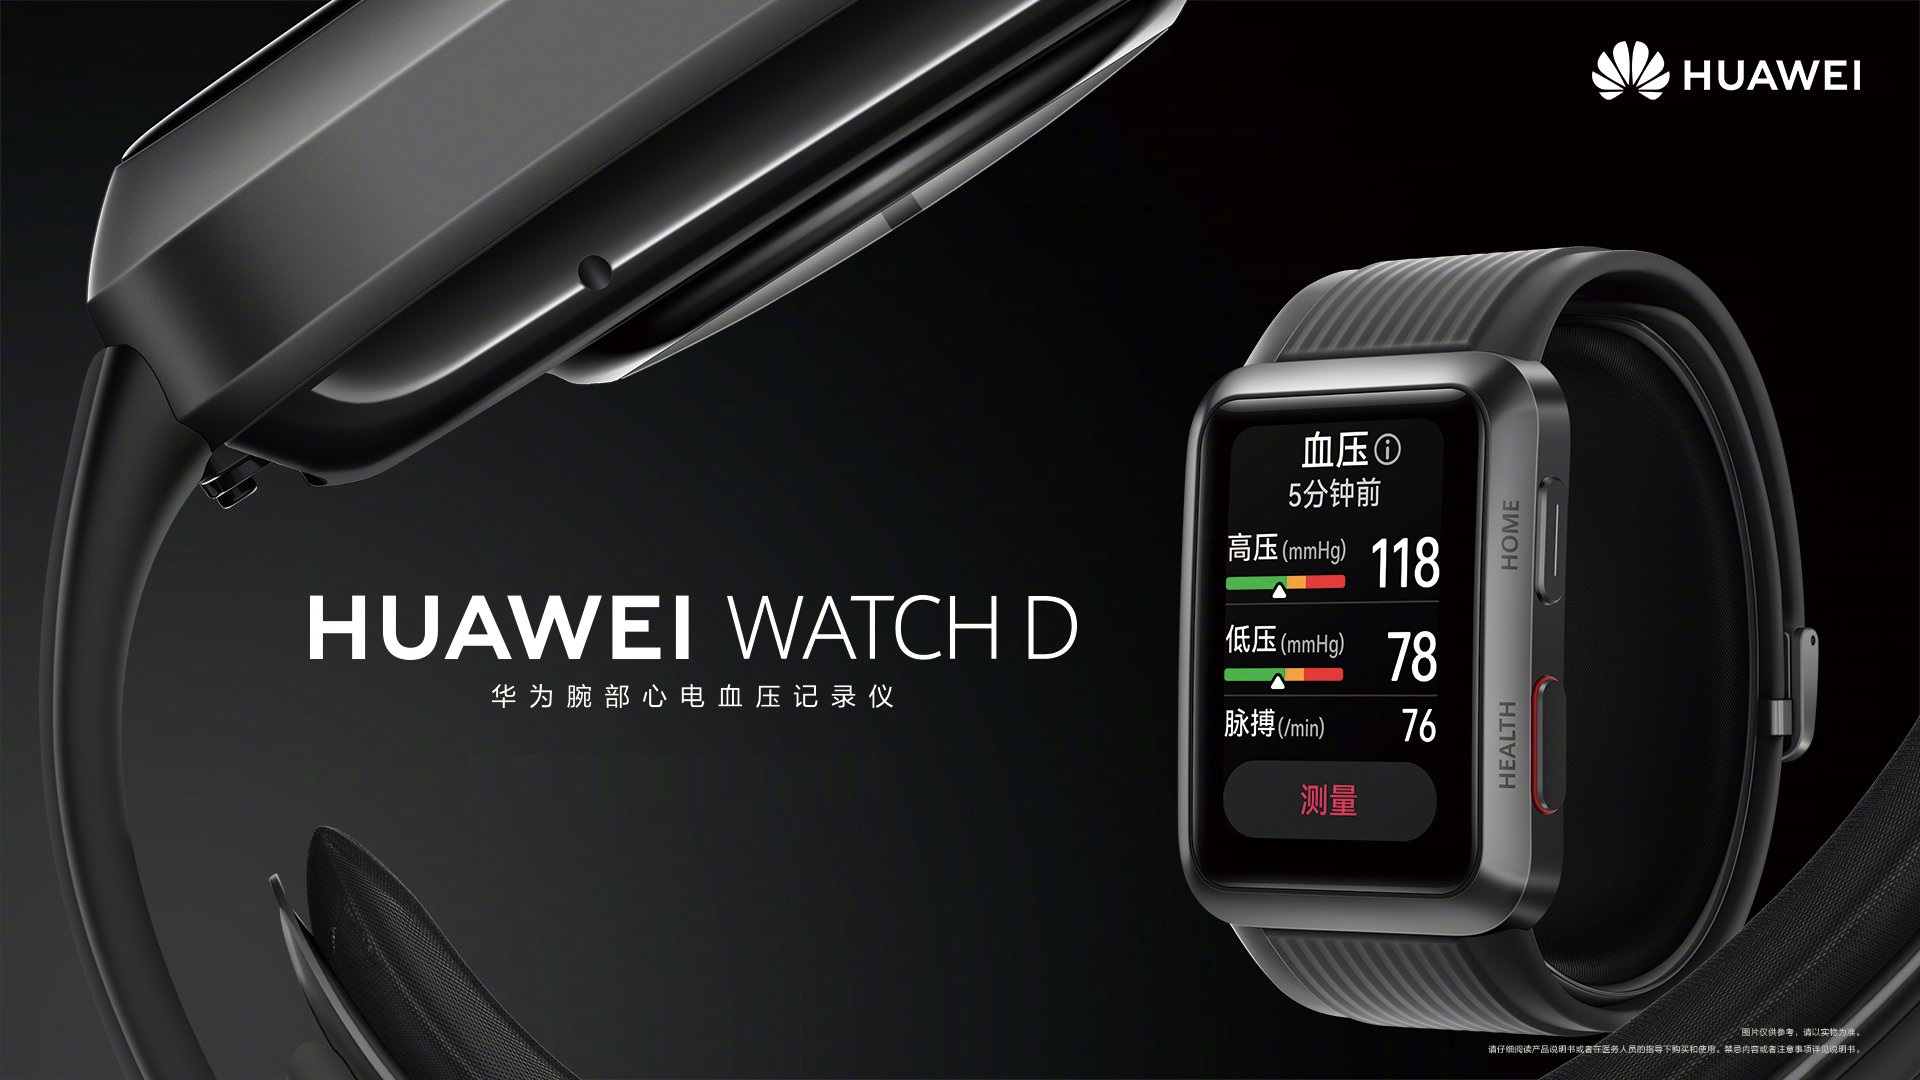 هواوي تعلن رسميا عن الساعة الذكية Huawei Watch D